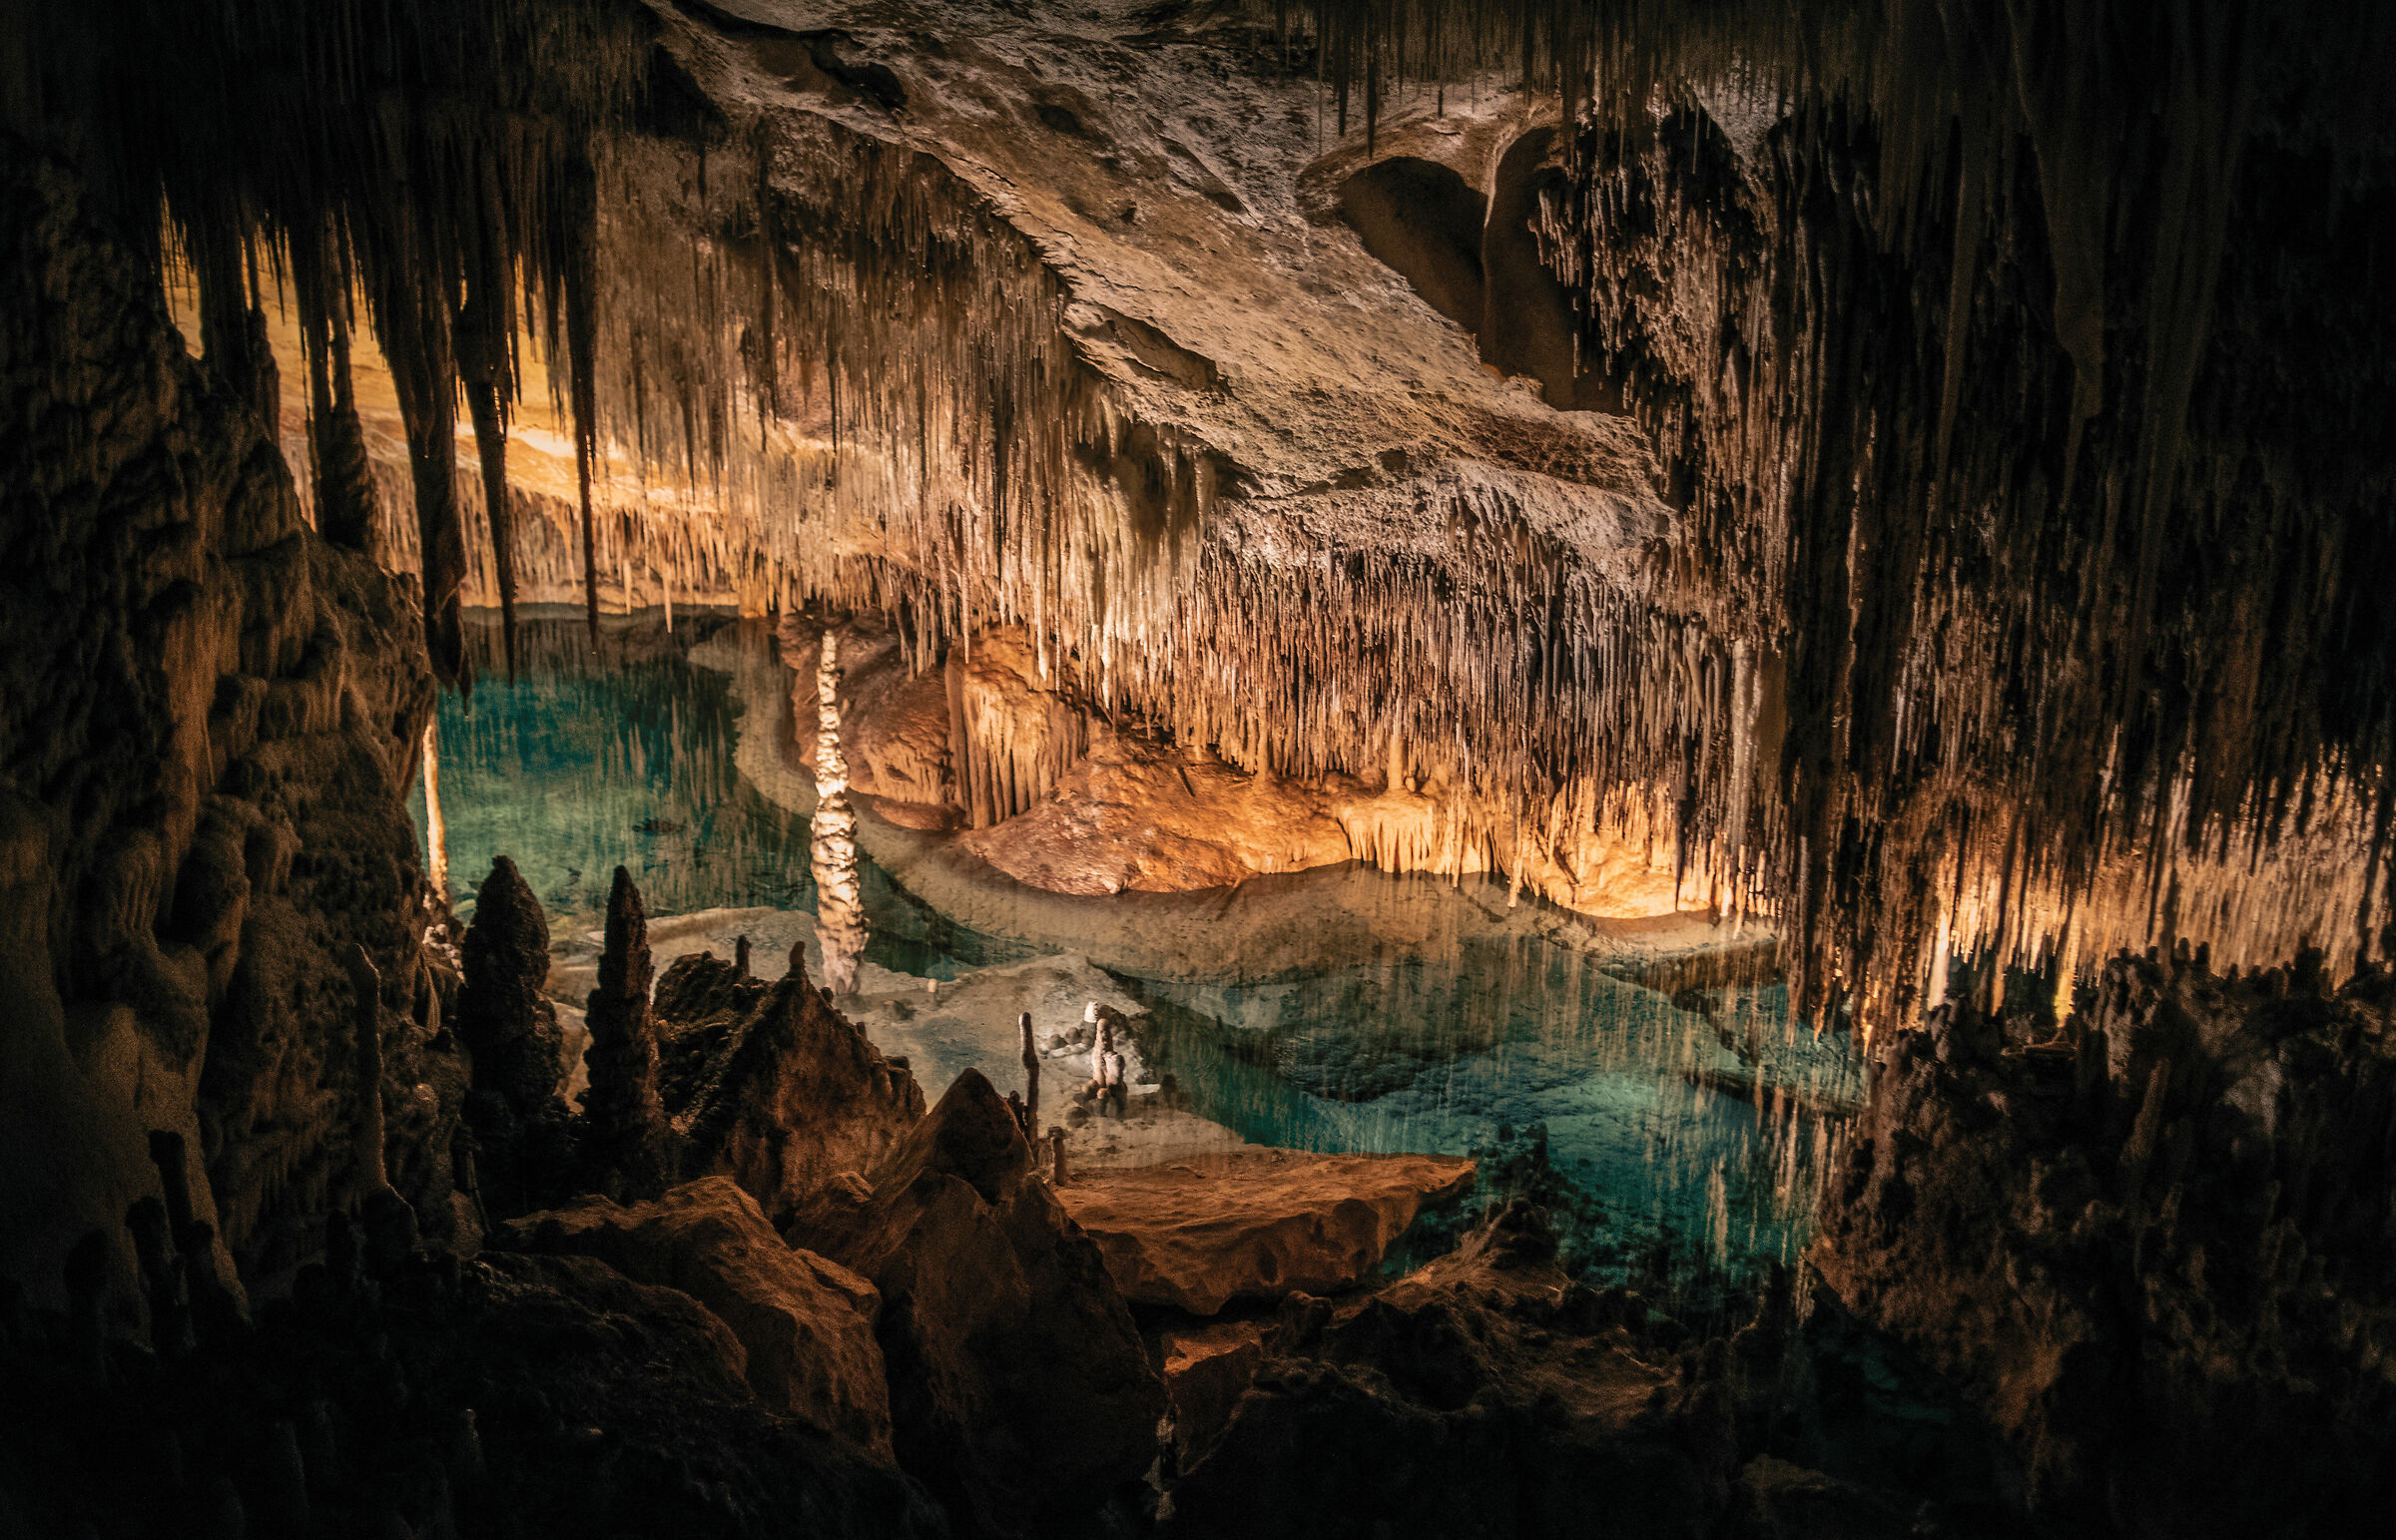 Cuevas del Drach - Grotte del drago (Maiorca)...